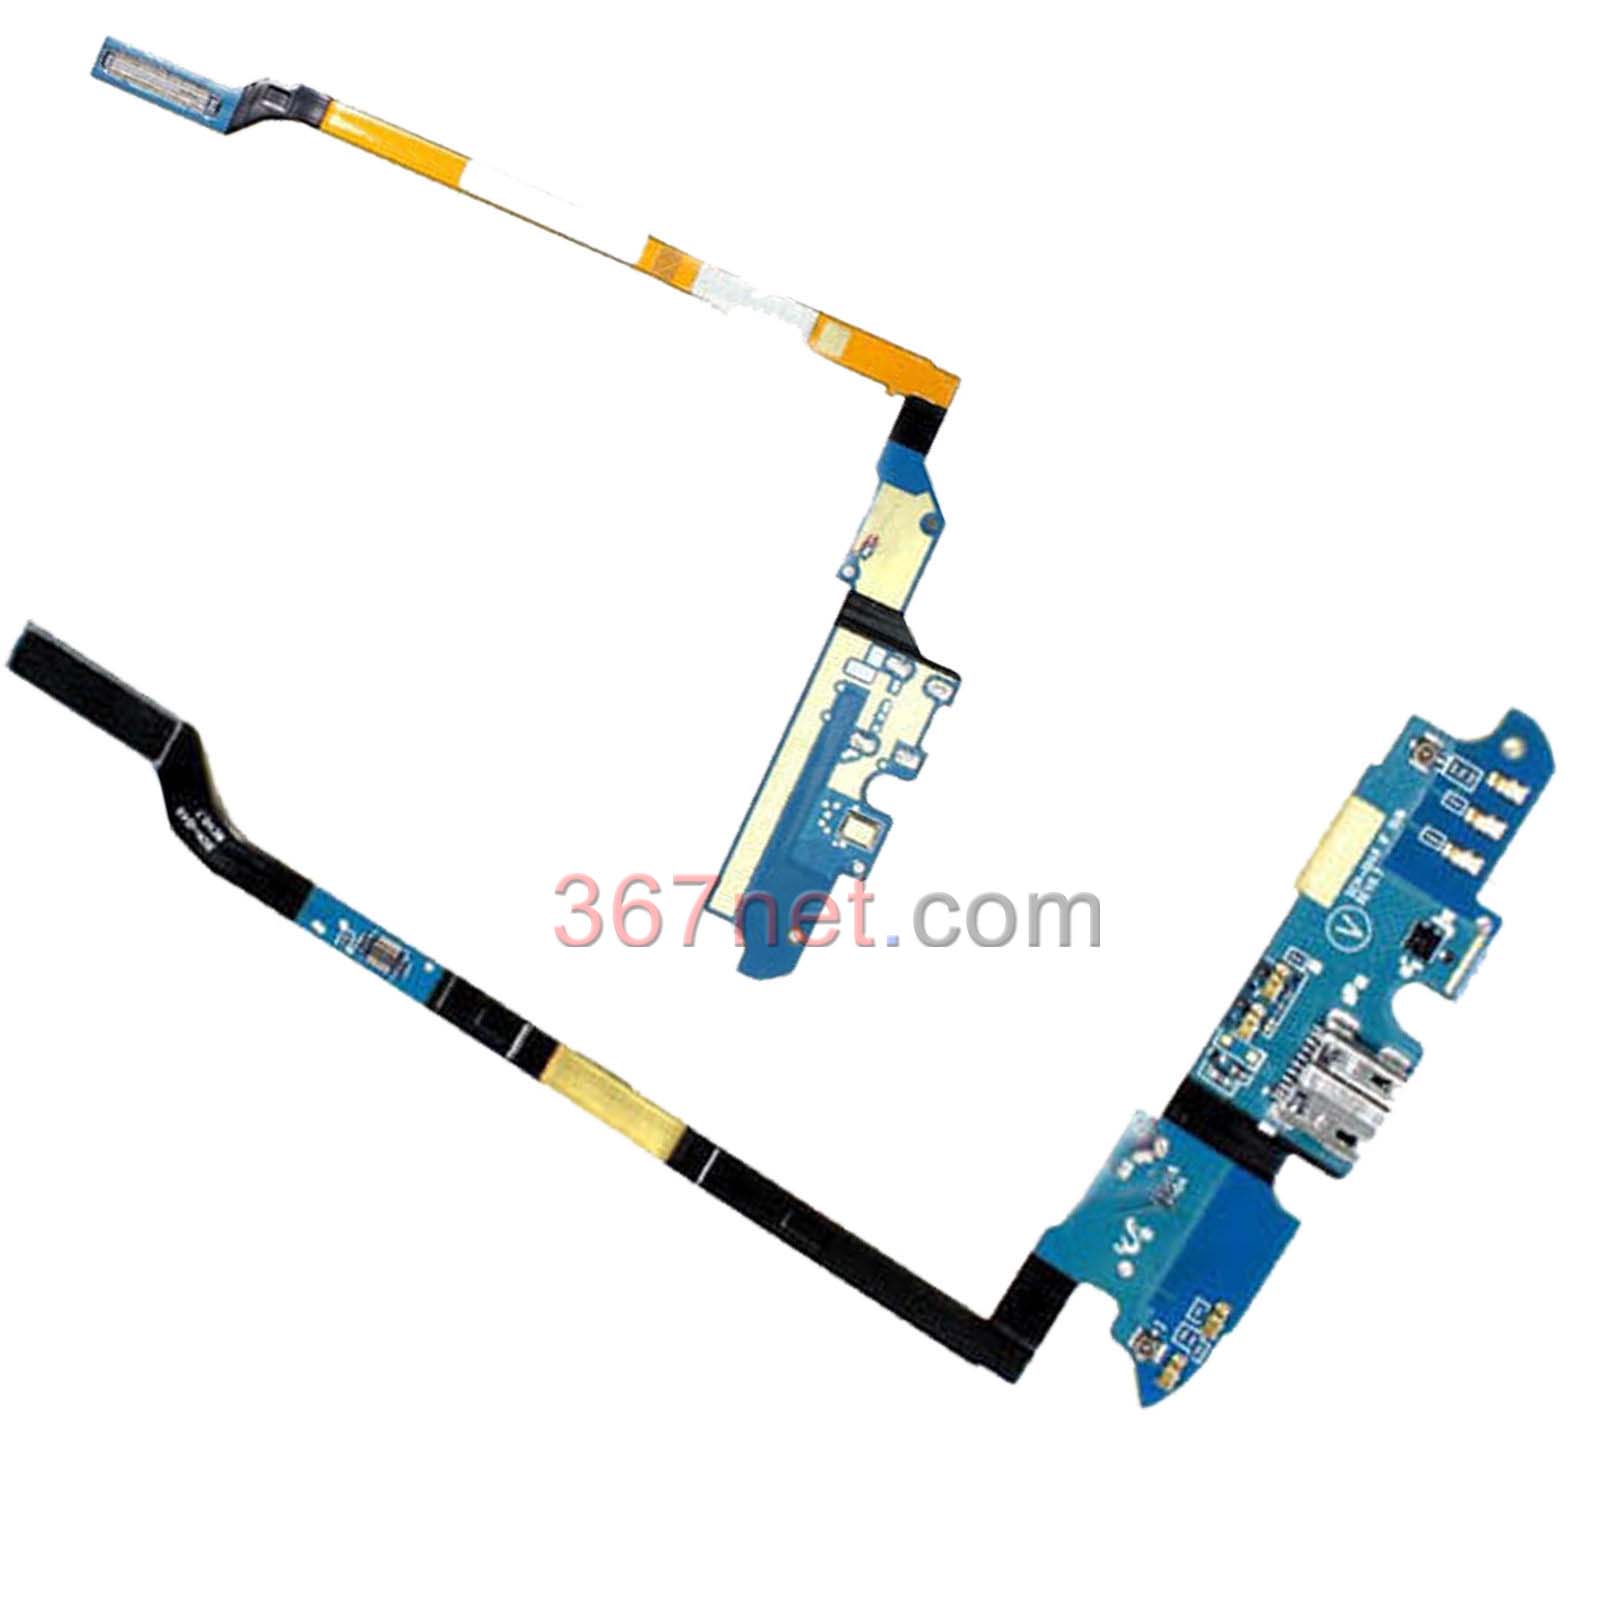 Samsung S4 i545 flex cable